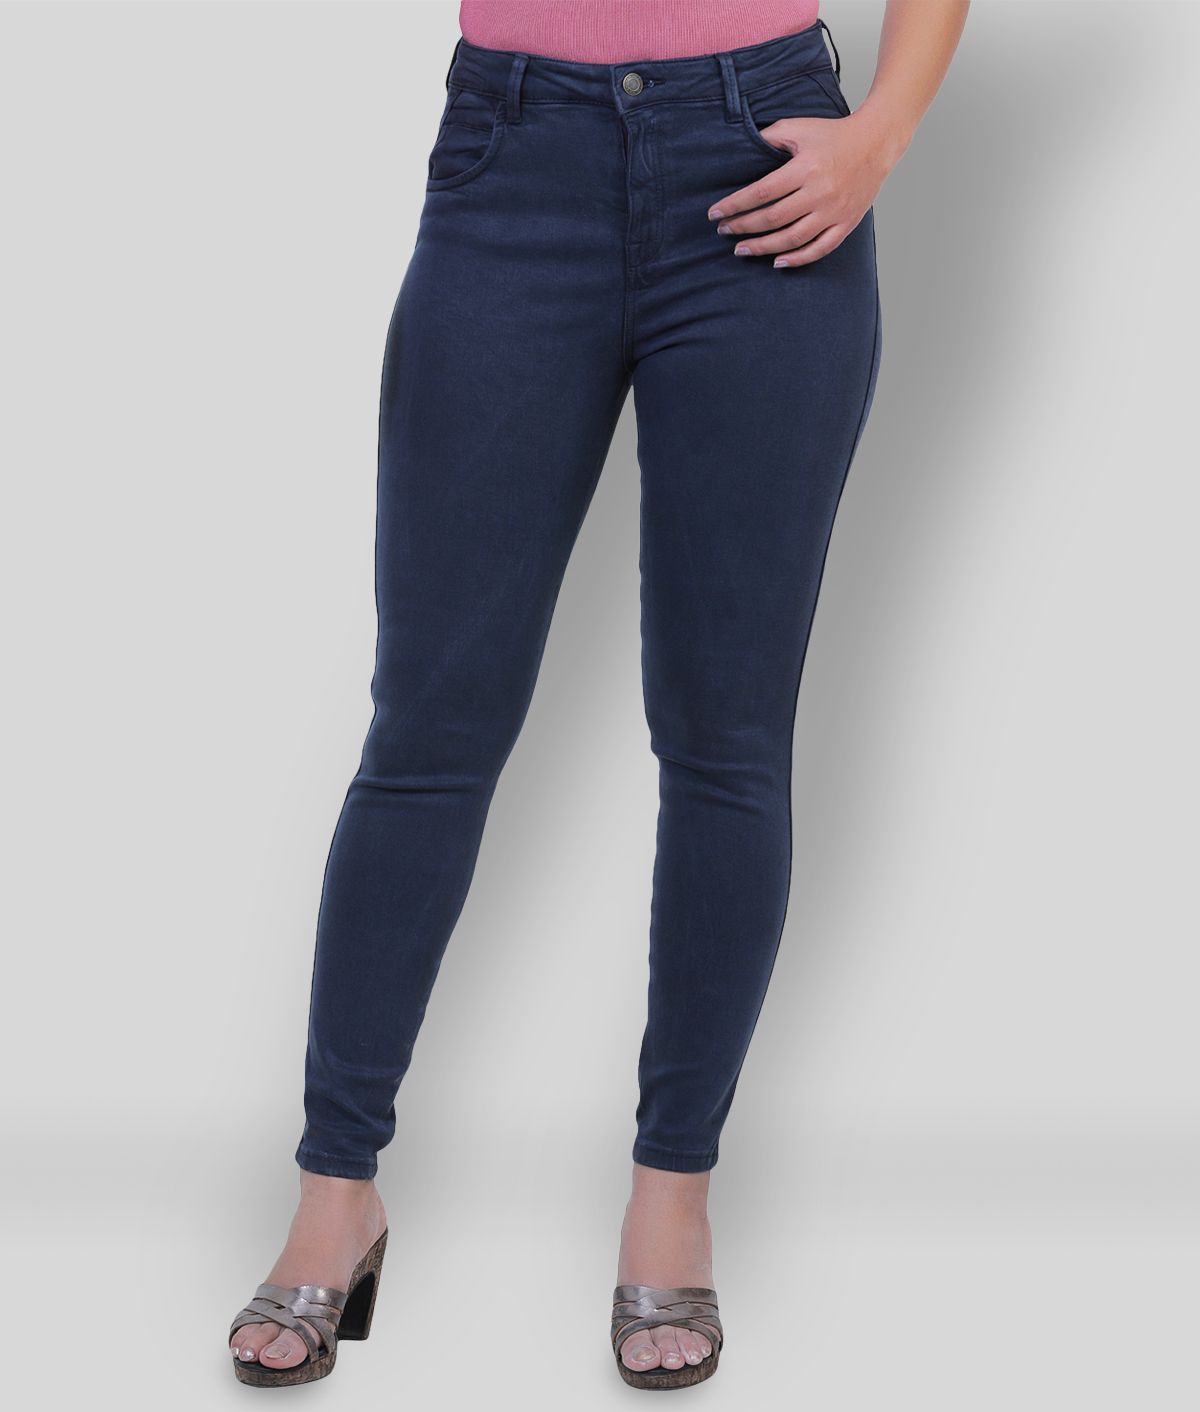 Sisney Cotton Lycra Jeans - Navy